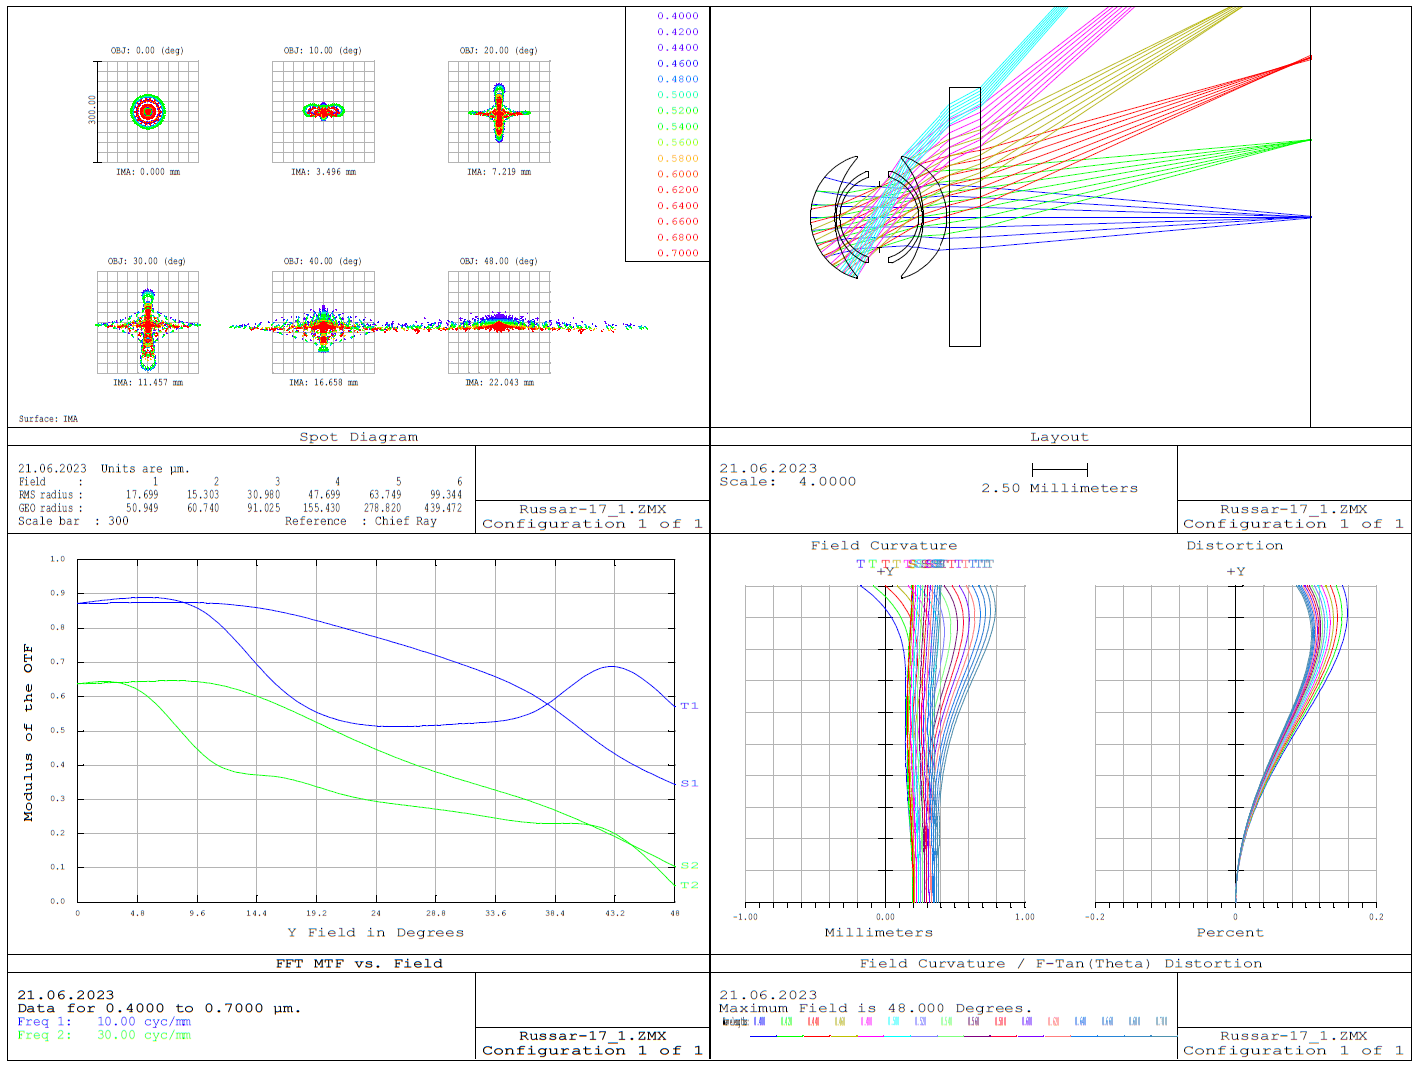 Диаграмма аберрационных пятен, принципиальная схема, частотно-контрастная характеристика (для спектральной функции Sony A7M2) и диаграмма кривизна поля-дисторсия для 20/5.6 объектива типа Руссар-17.